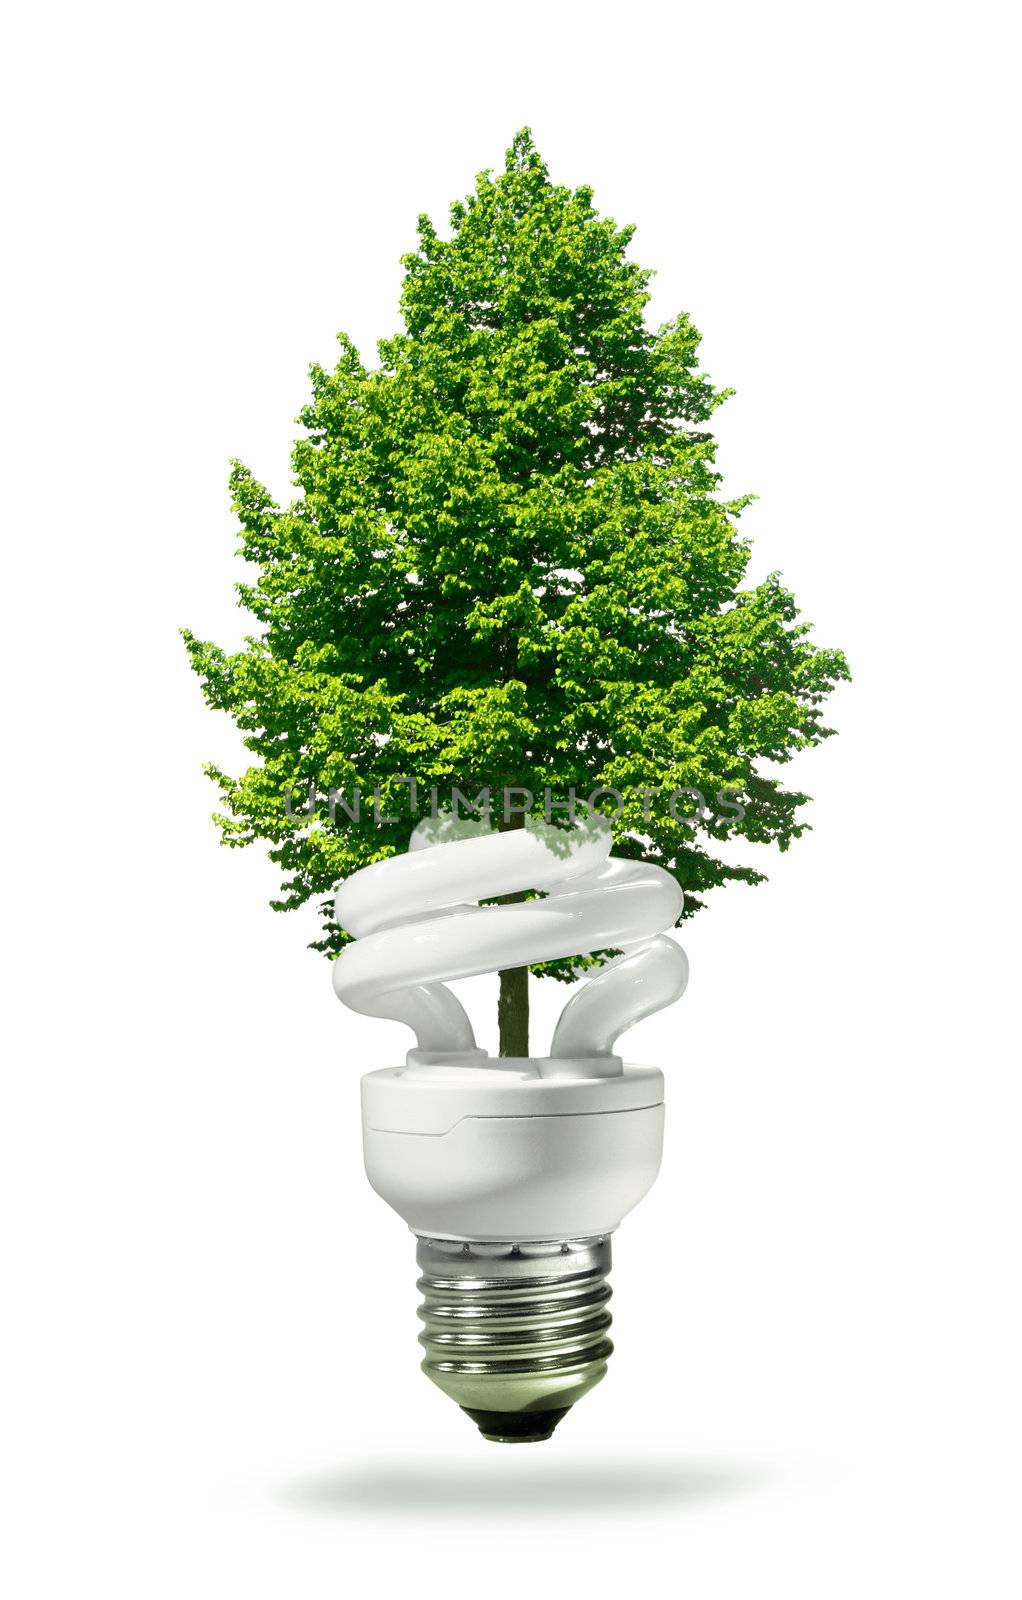 Eco lamp and tree by anterovium